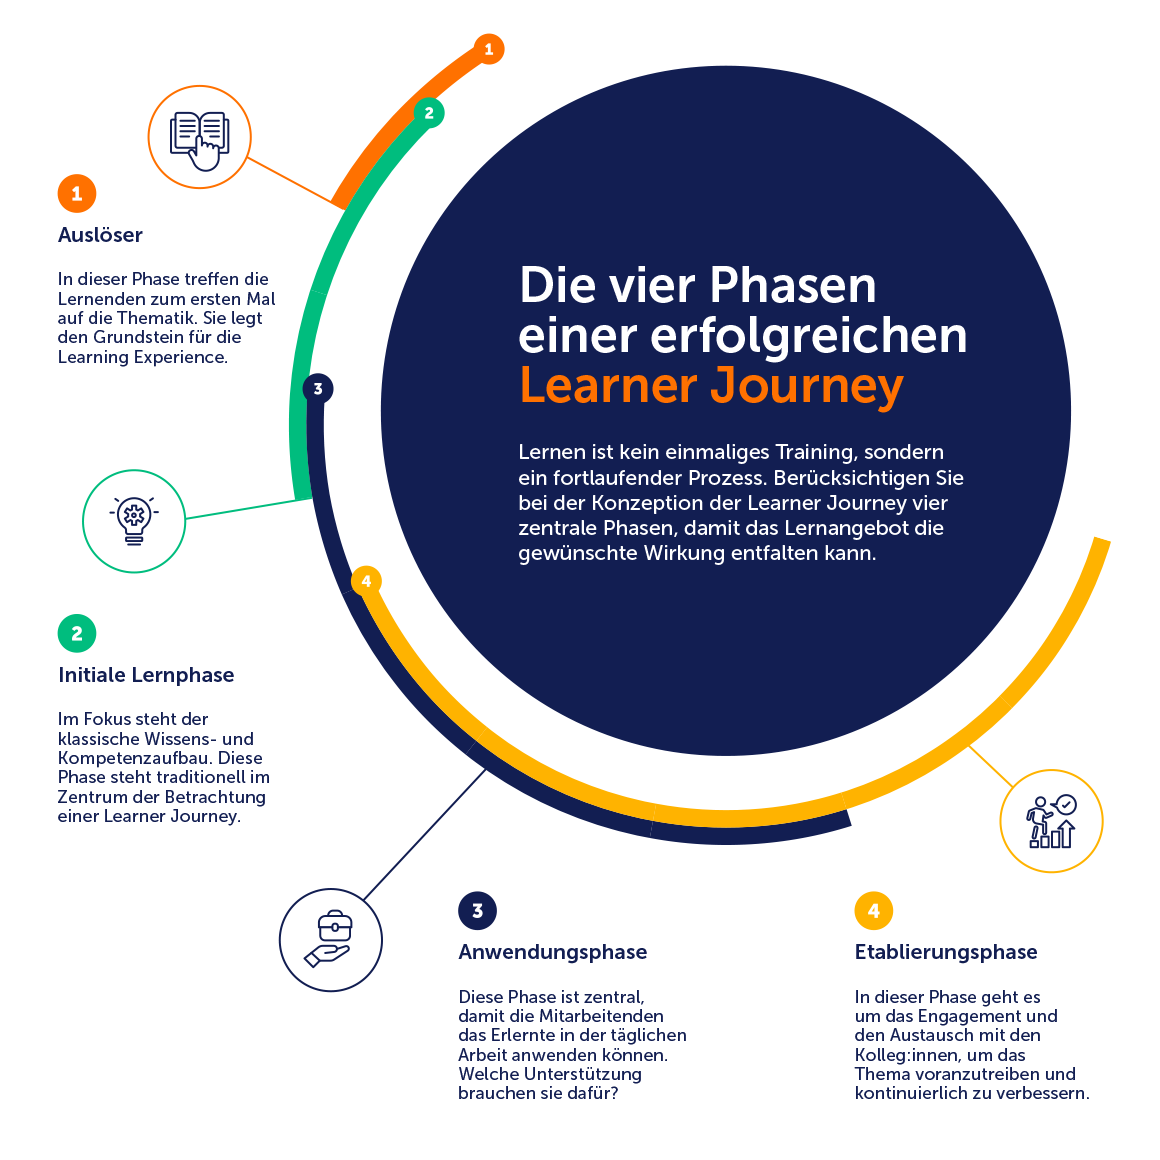 Die vier Phasen einer erfolgreichen Learner Journey